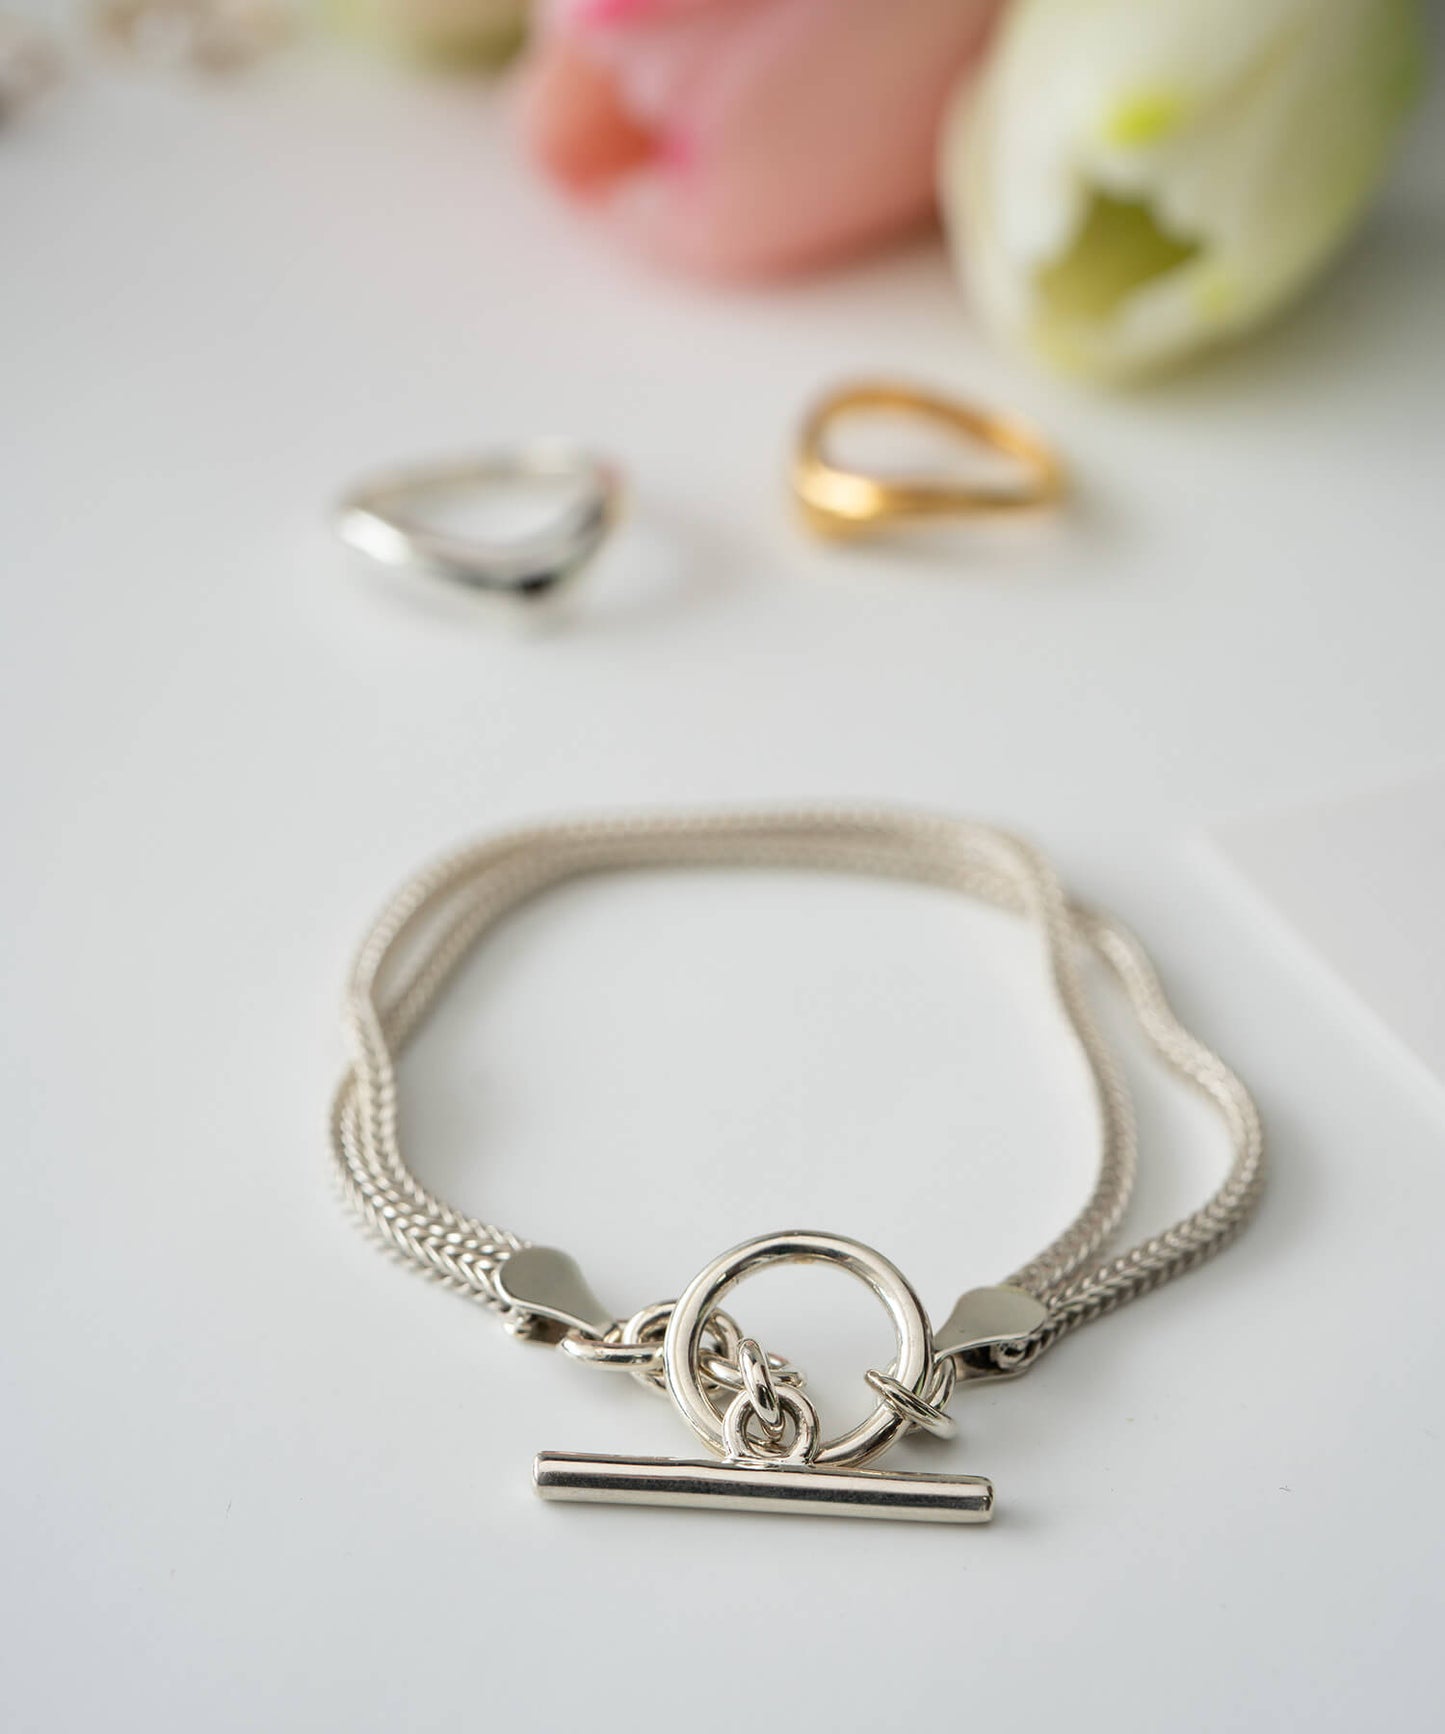 Double Chain Mantel Bracelet | VENEC-GEMELLI BRACELET